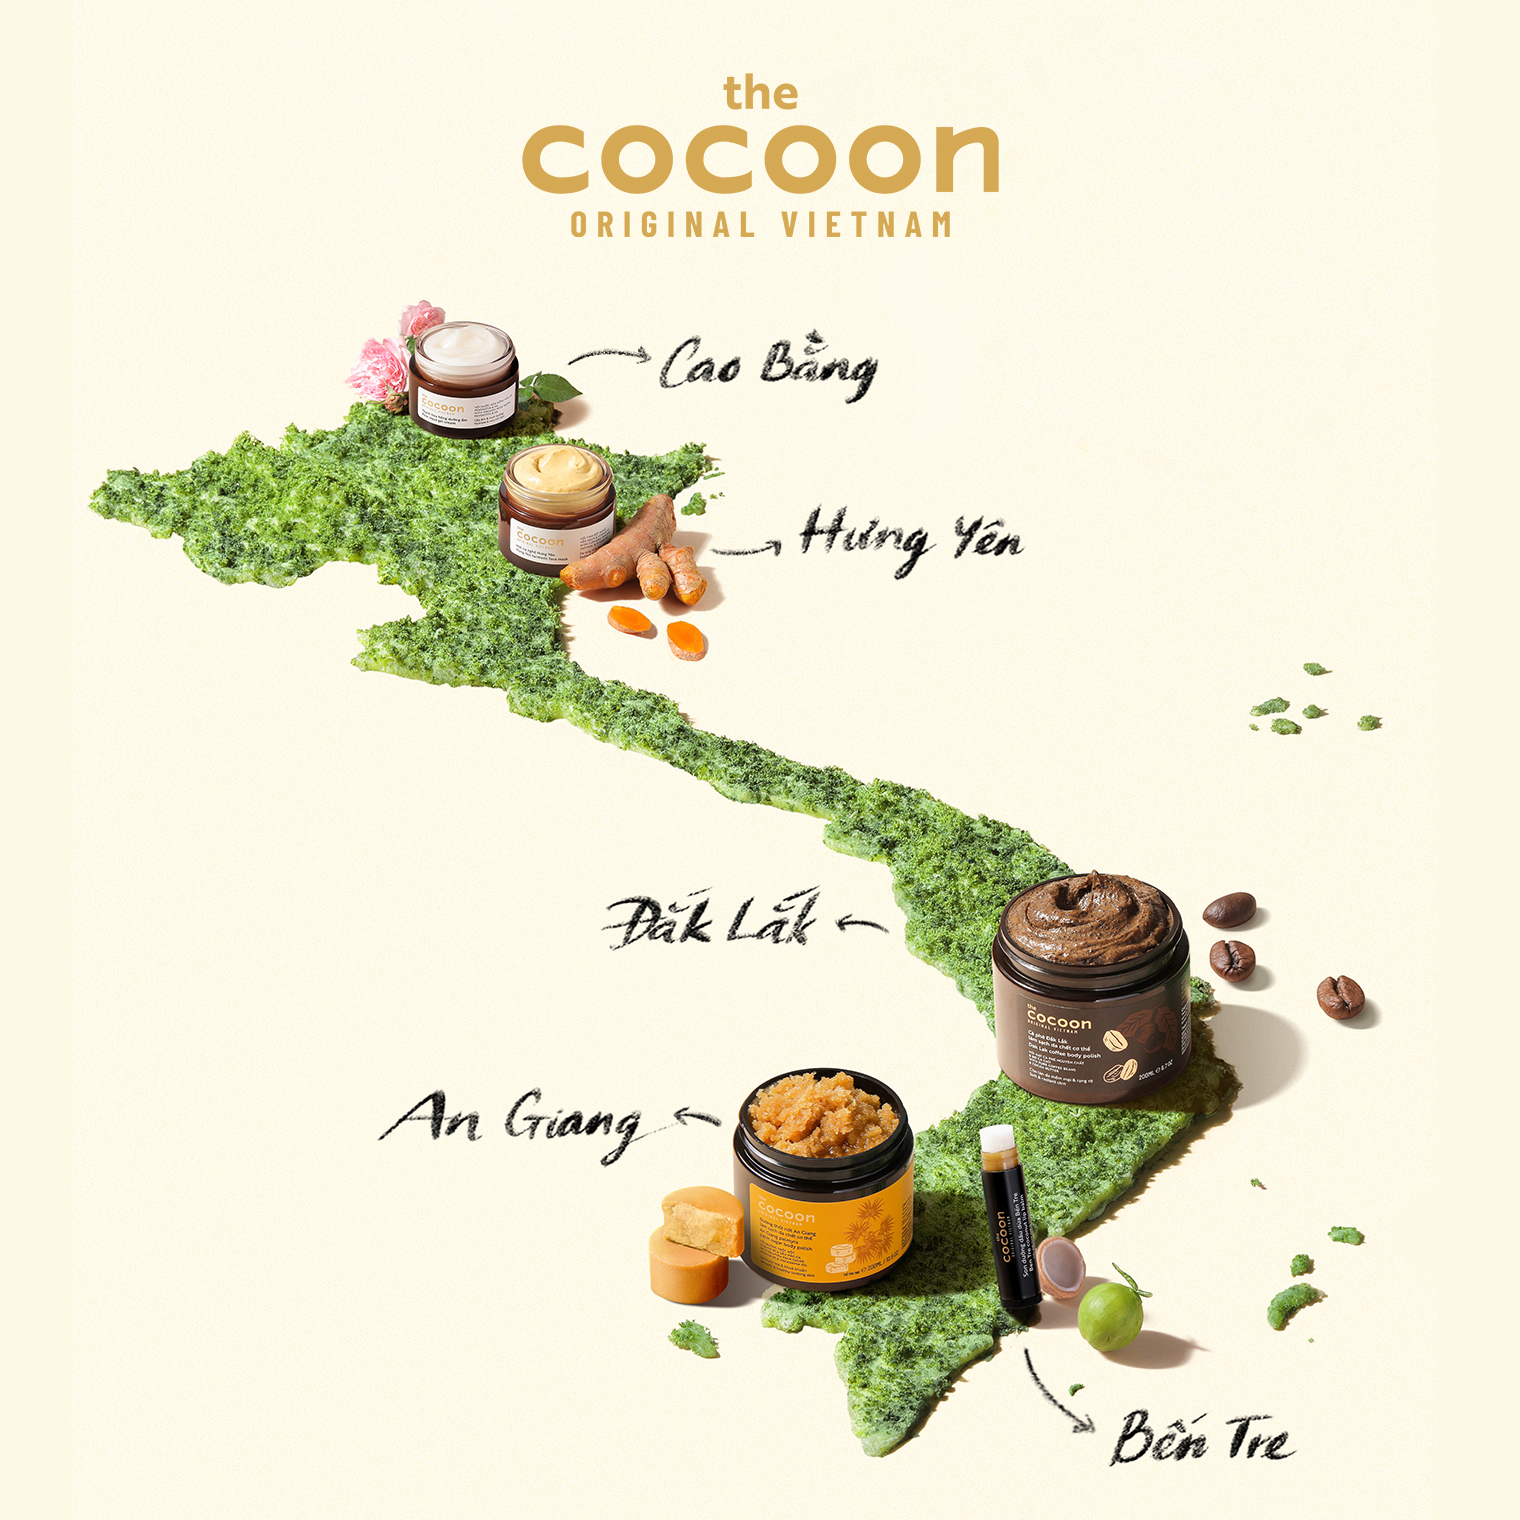  Sản phẩm của thương hiệu Cocoon được phân phối rộng khắp 